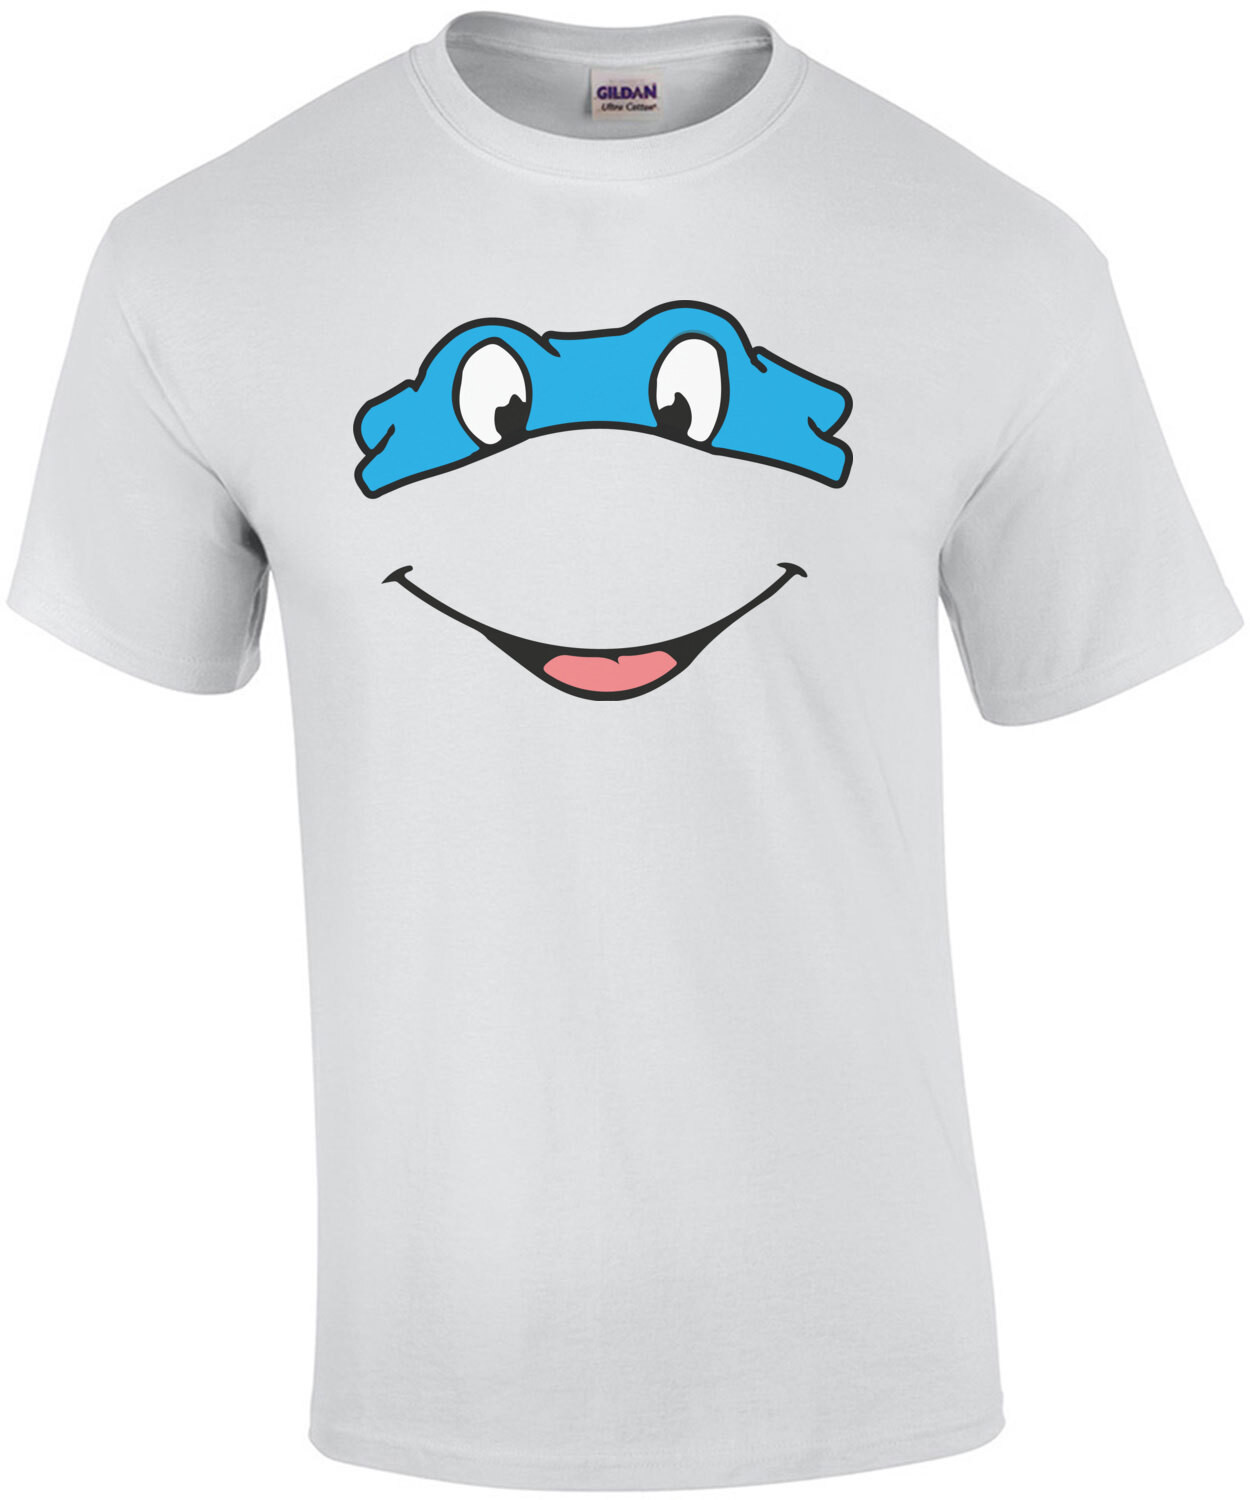 Leonardo - Teenage Mutant Ninja Turtle - TMNT - 90's T-Shirt